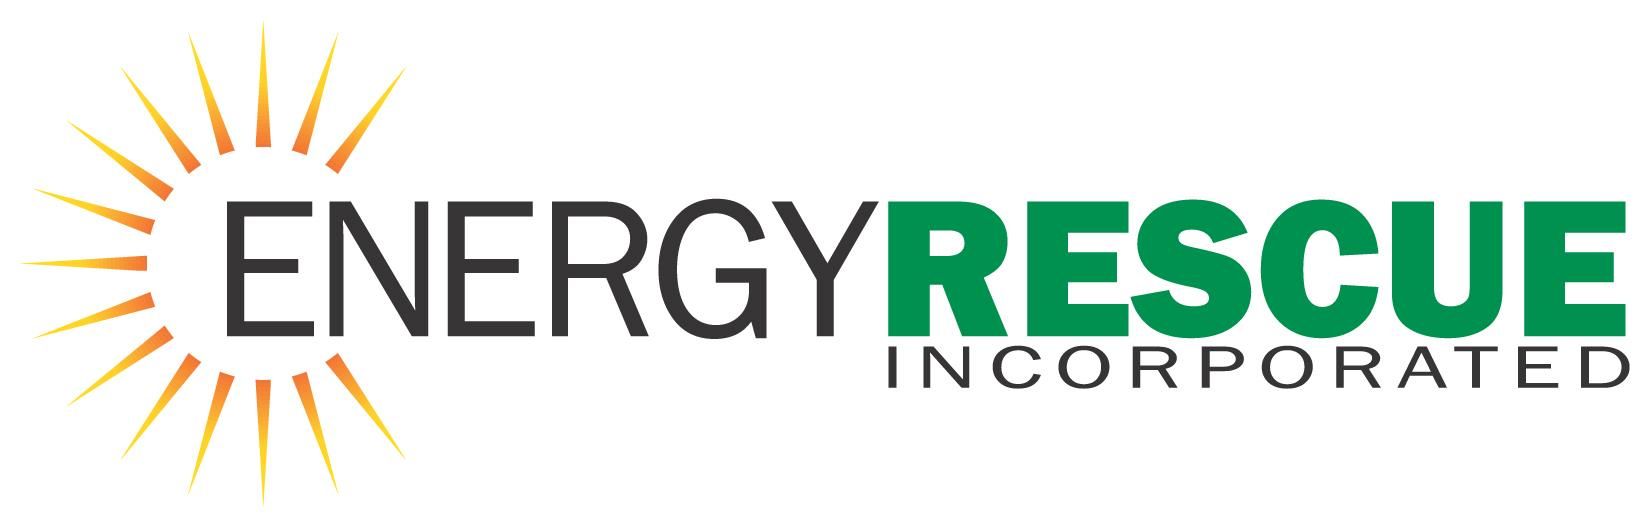 Energy Rescue Inc